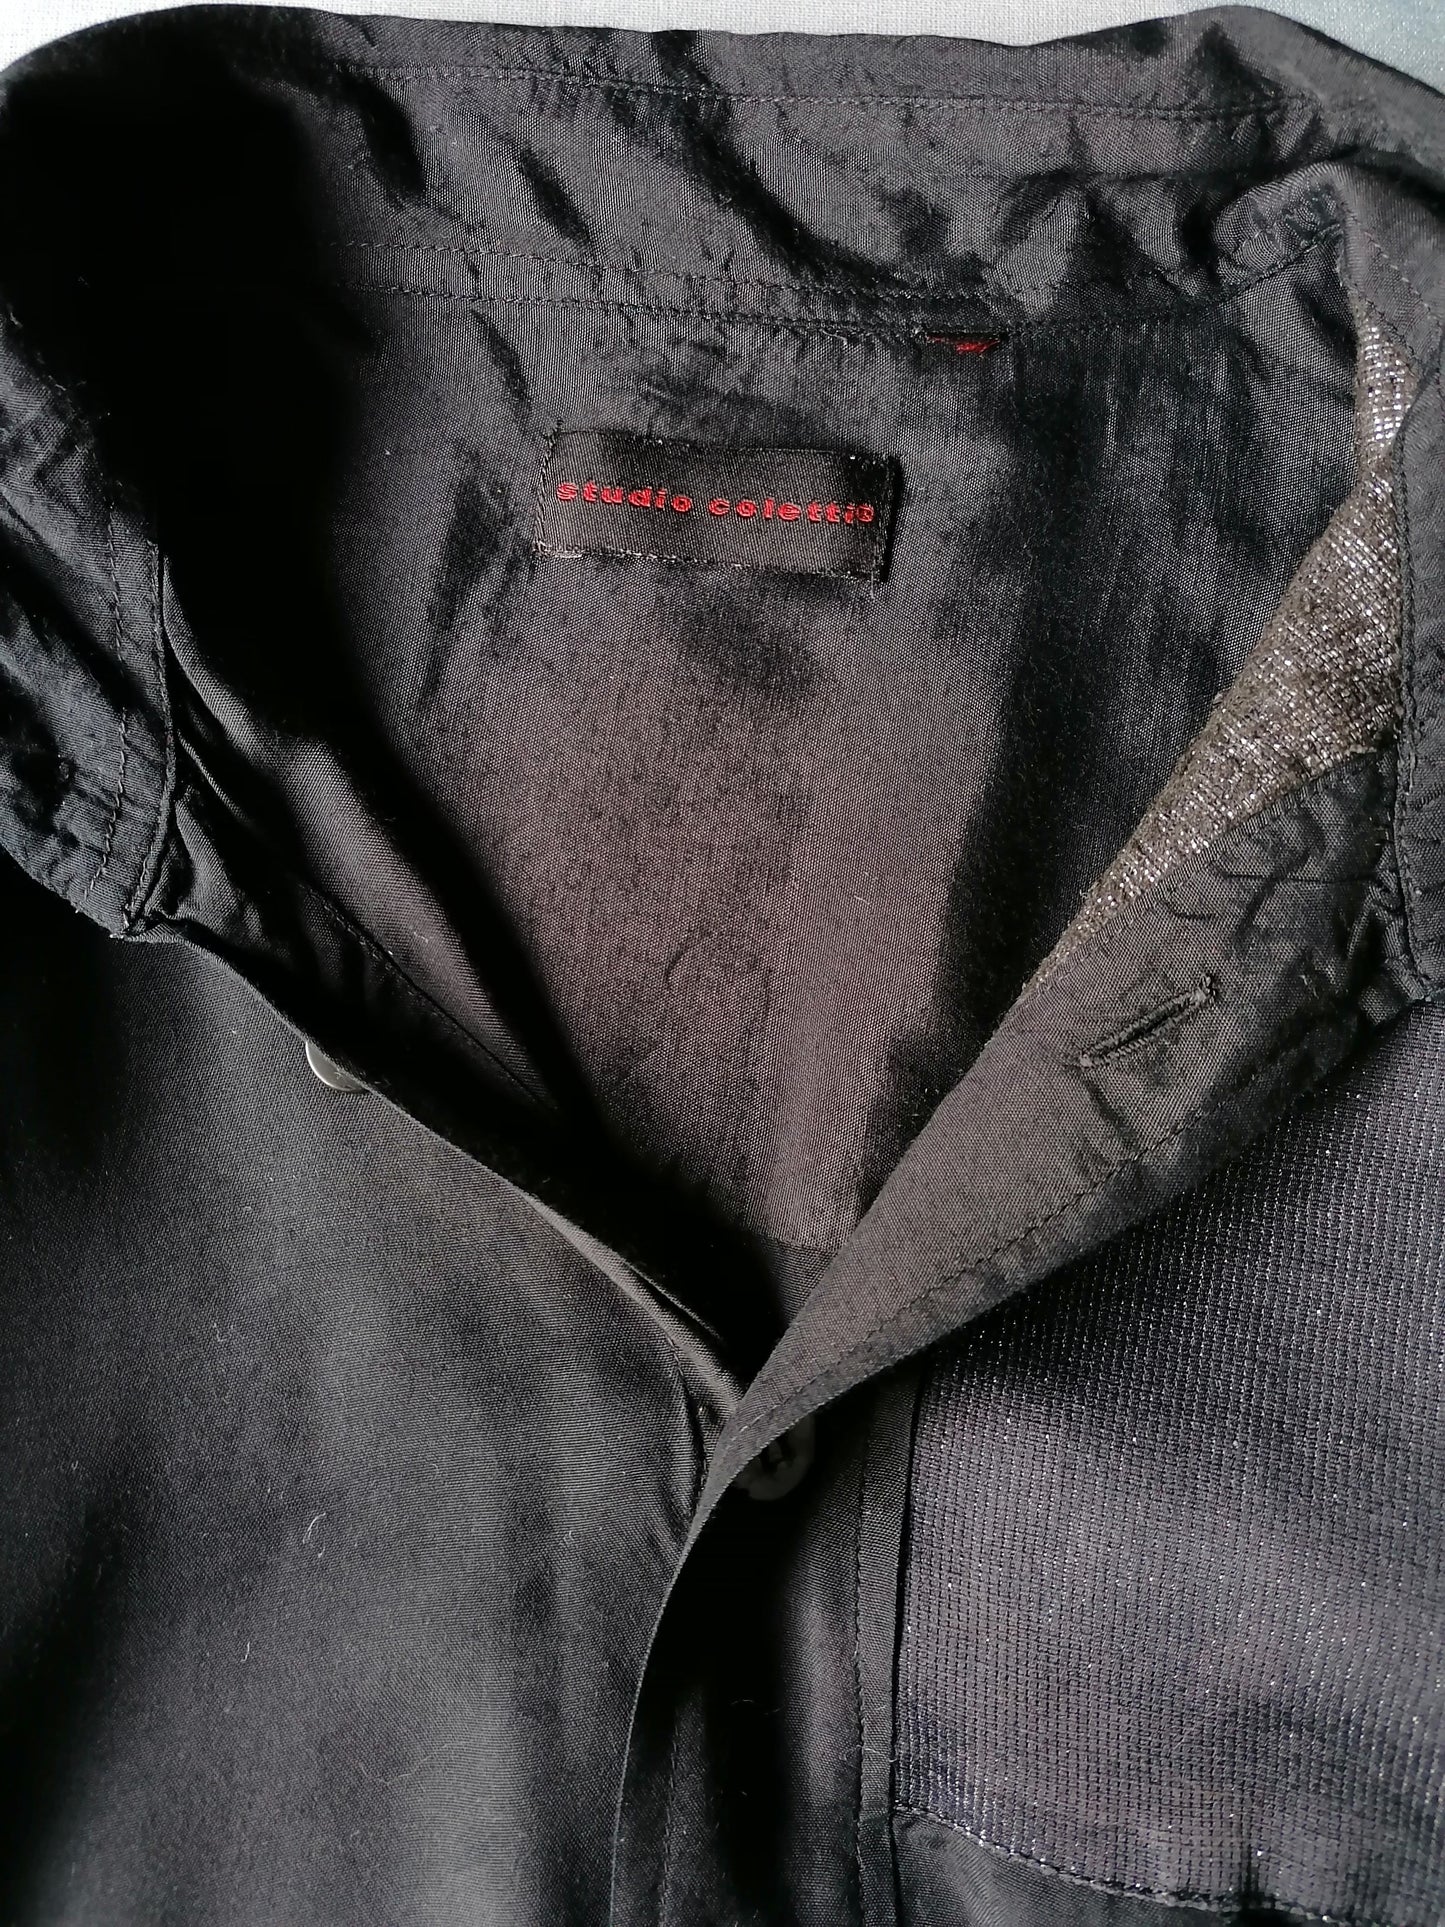 Camisa de manga corta de estudio de vintage coleti. Negro de color con plata negra plateada porción. Tamaño XL. Viscosa.